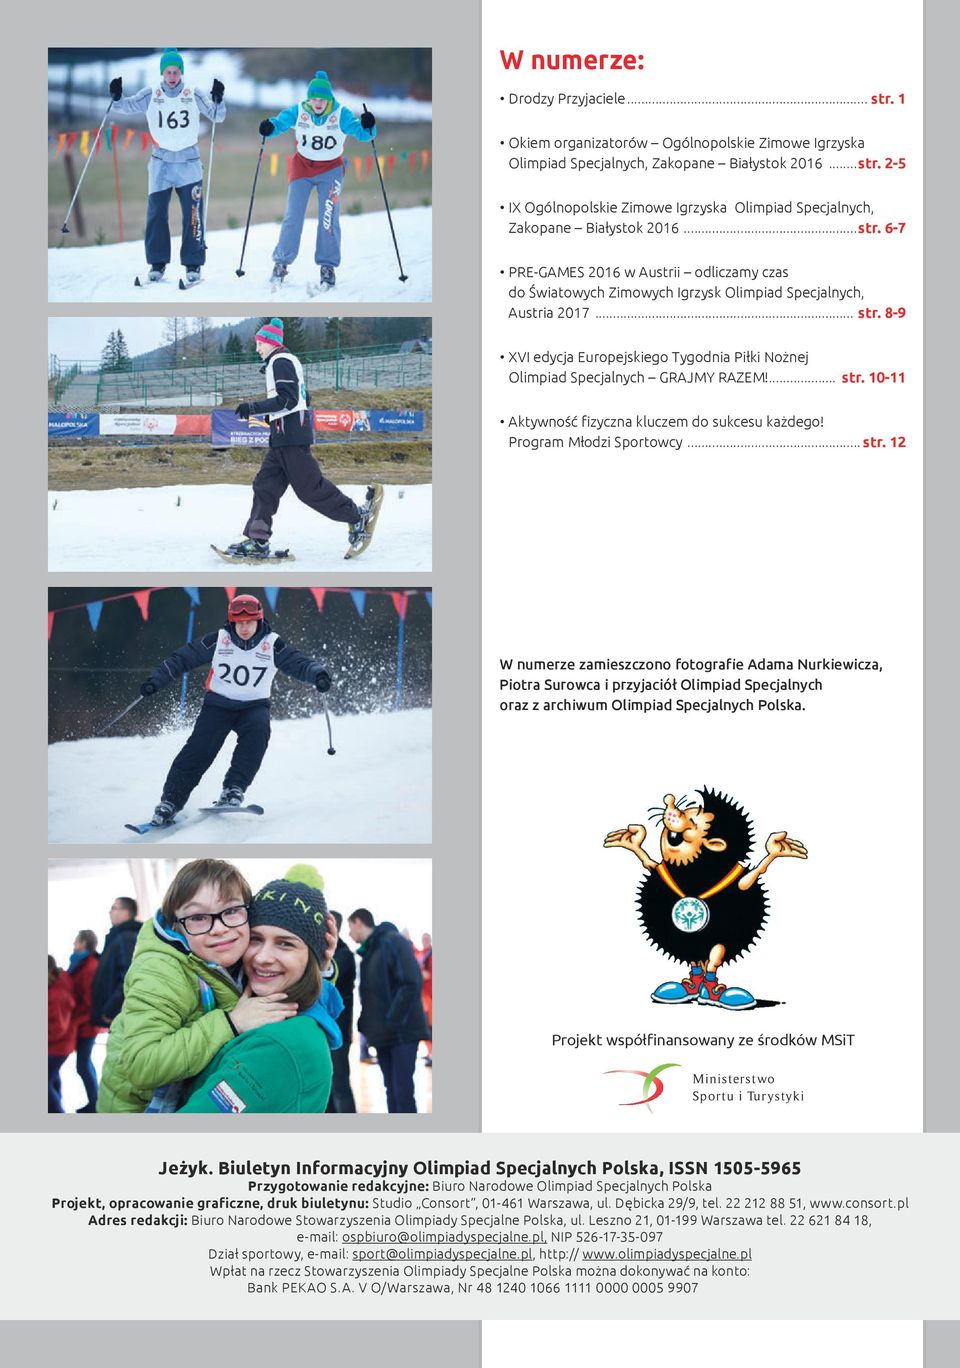 6-7 PRE-GAMES 2016 w Austrii odliczamy czas do Światowych Zimowych Igrzysk Olimpiad Specjalnych, Austria 2017 str. 8-9 XVI edycja Europejskiego Tygodnia Piłki Nożnej Olimpiad Specjalnych GRAJMY RAZEM!